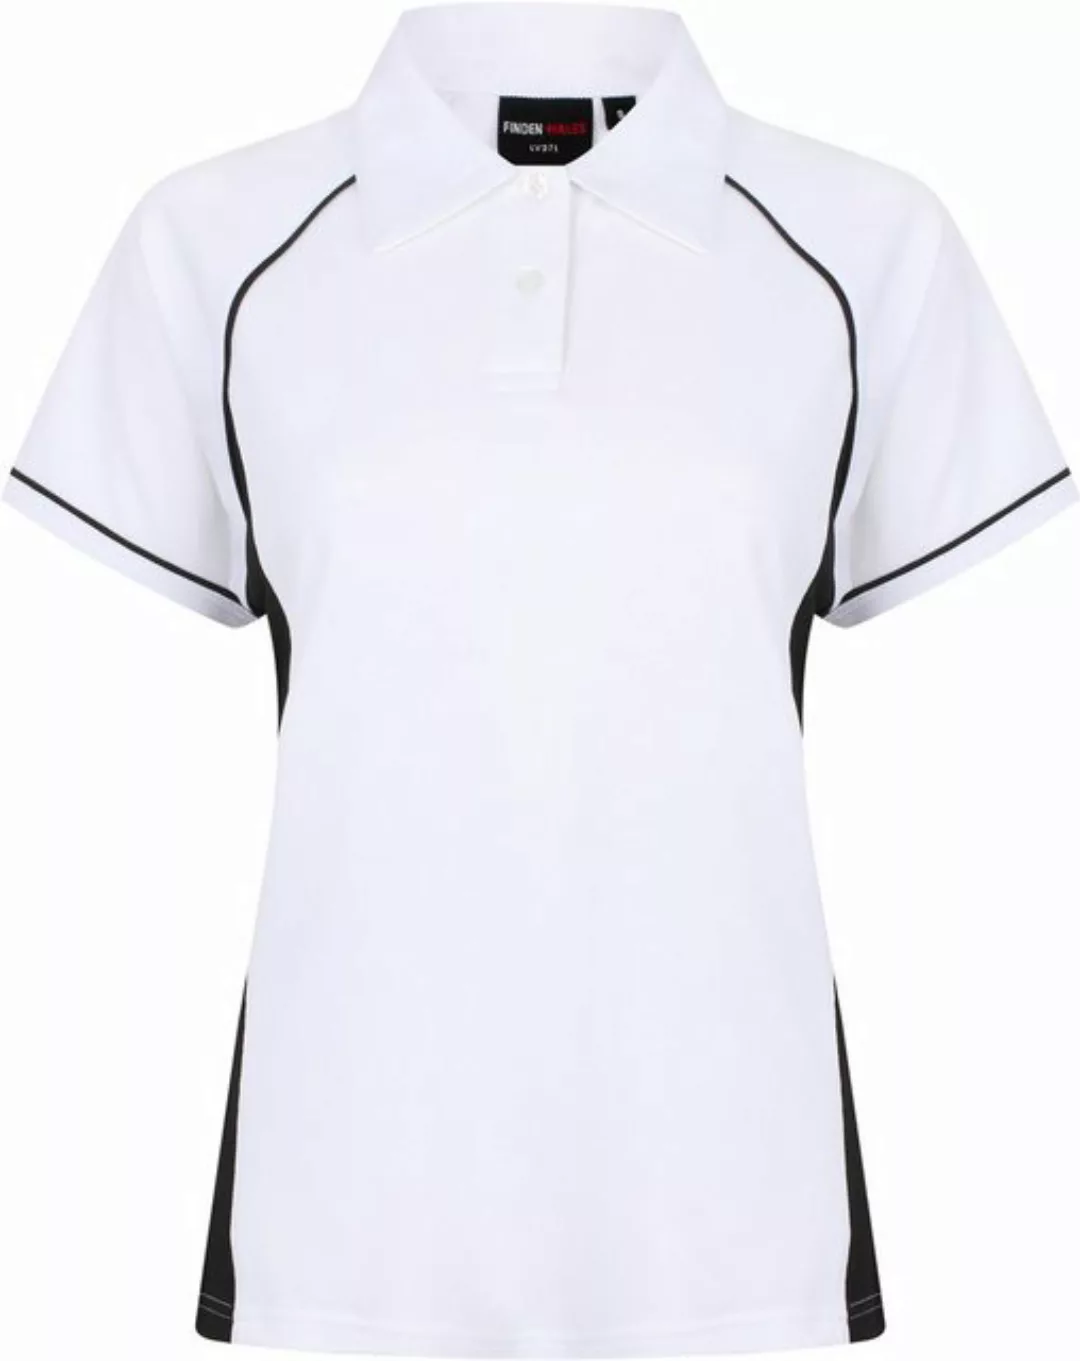 Finden+Hales Poloshirt Ladies Piped Performance Damen Poloshirt günstig online kaufen